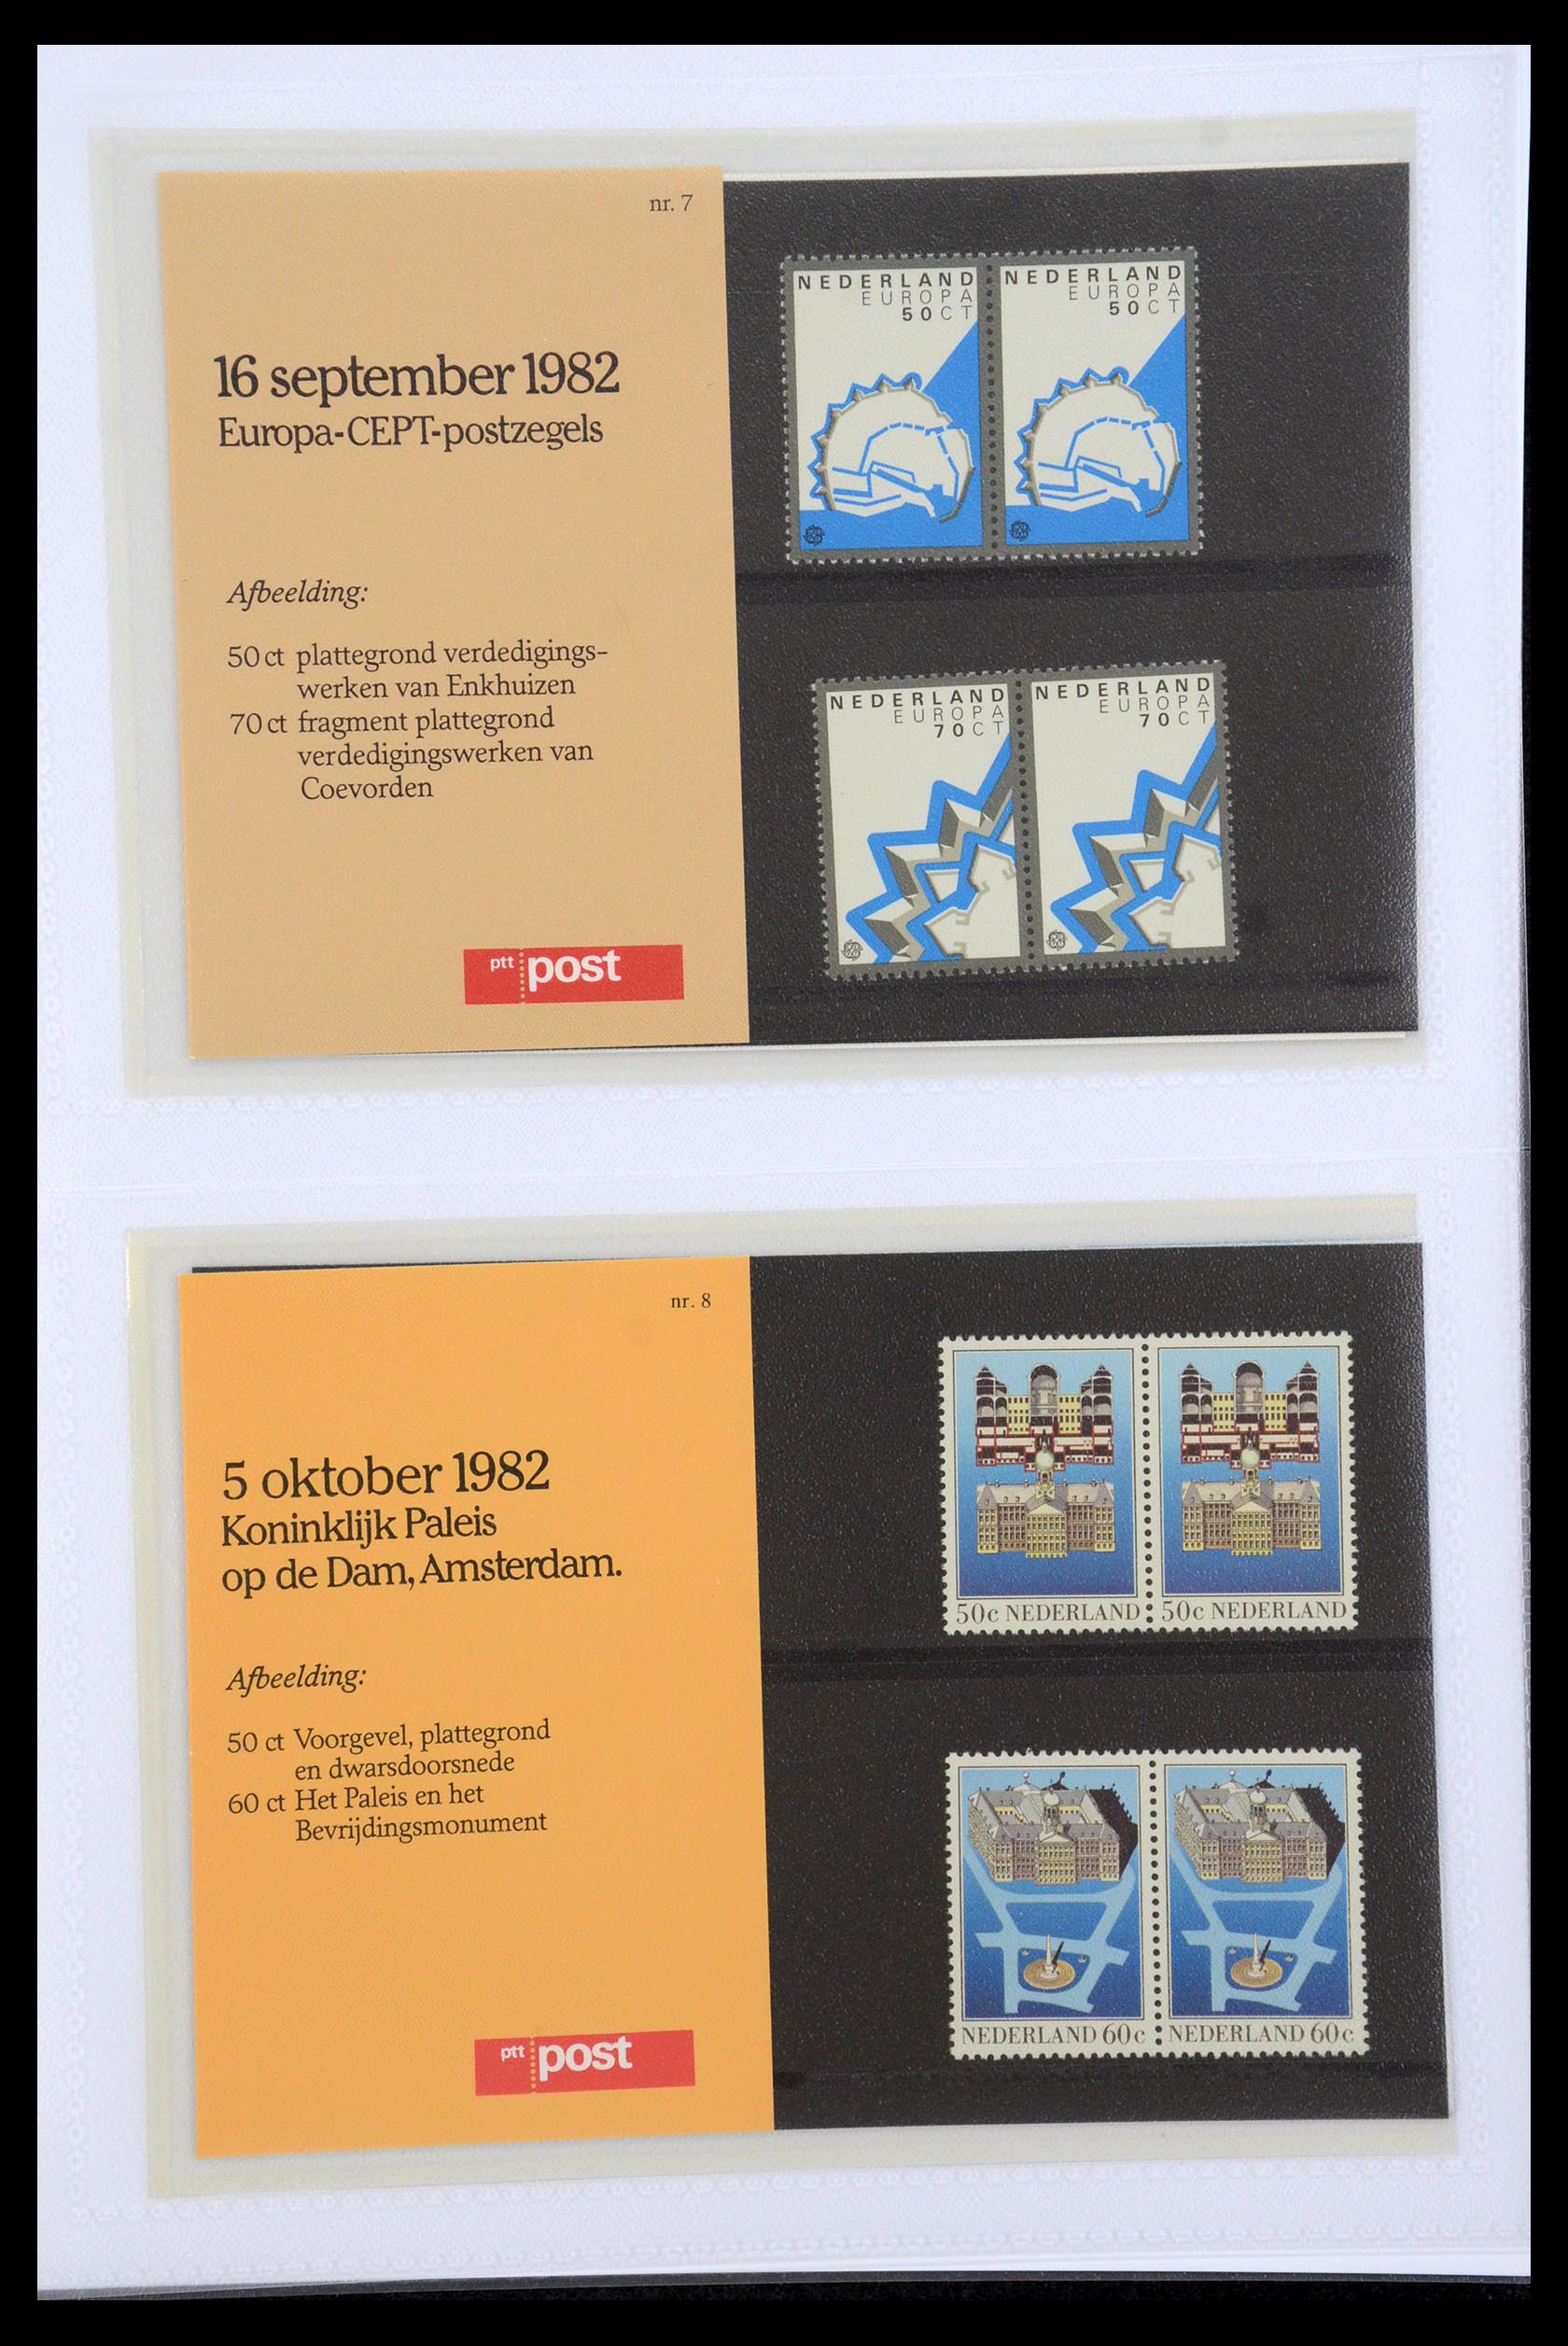 35947 004 - Stamp Collection 35947 Netherlands PTT presentation packs 1982-2019!